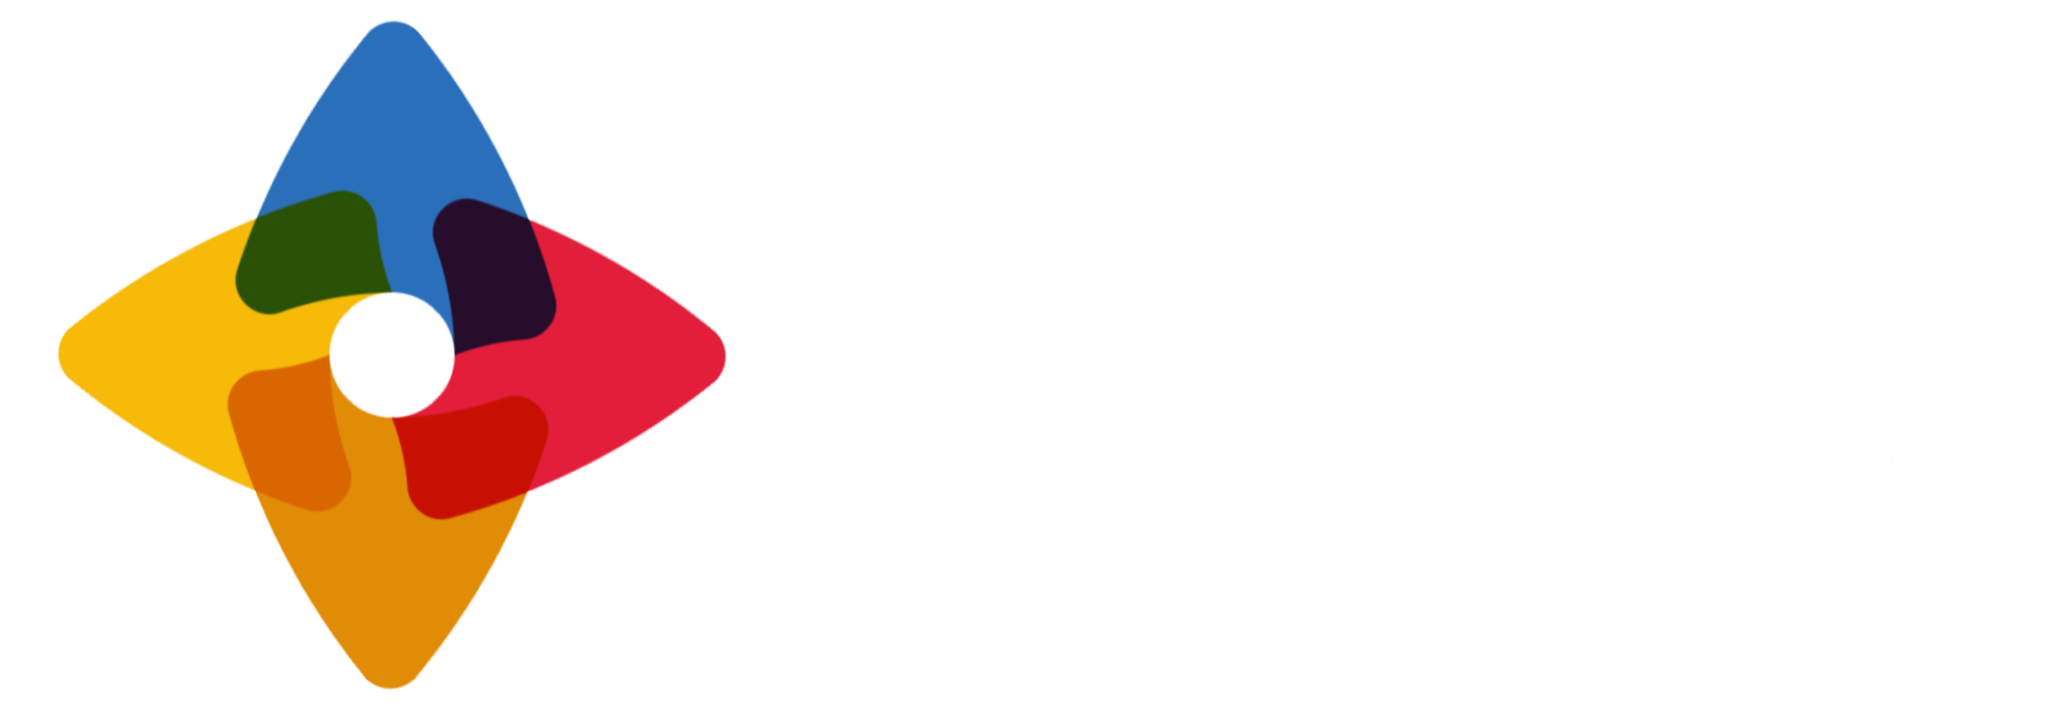 AKS